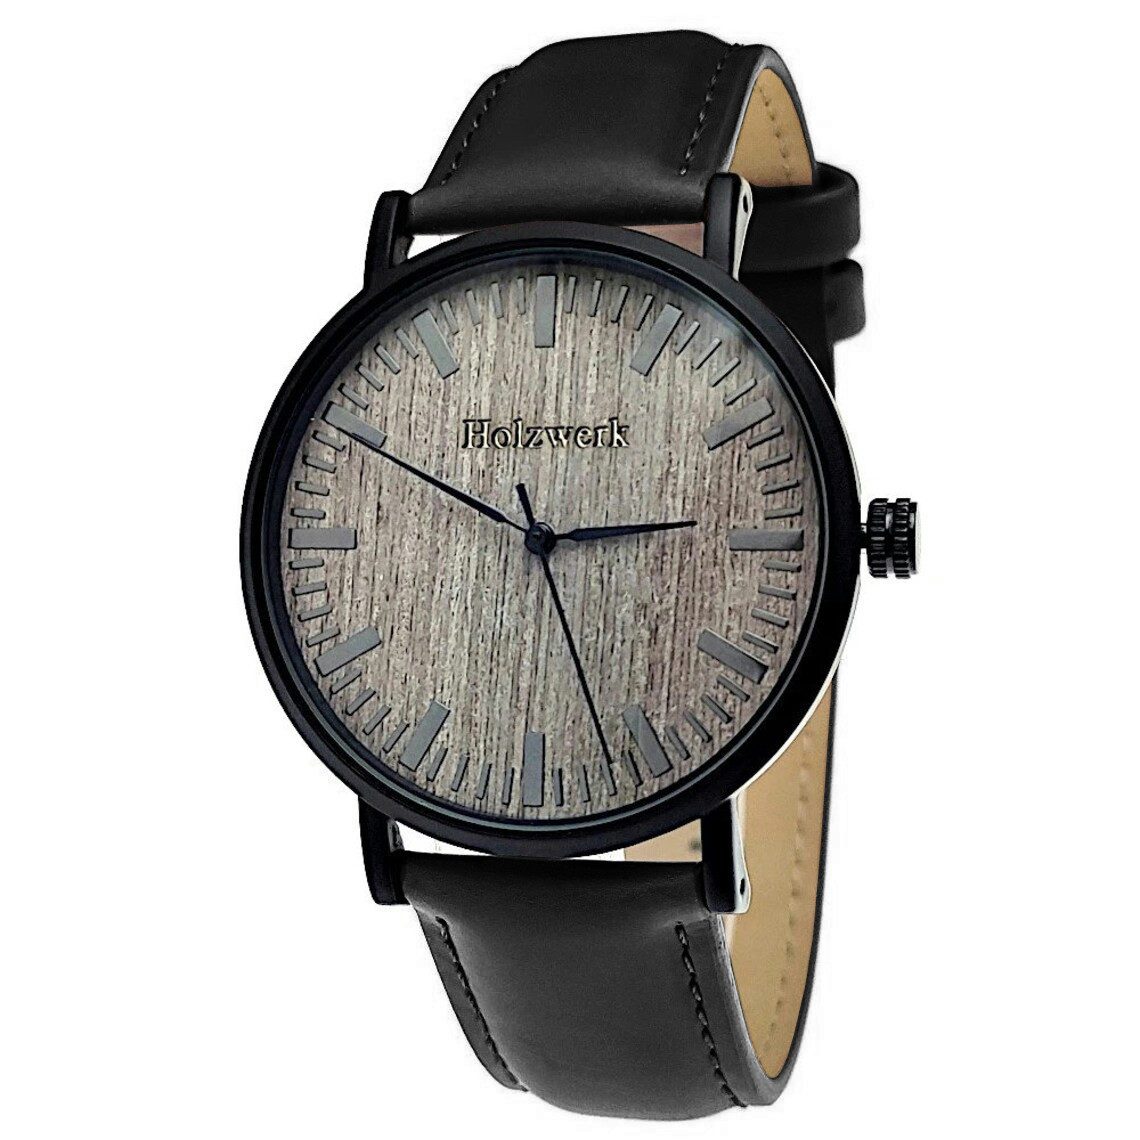 Holzwerk Quarzuhr Damen & Herren Holz Uhr mit Leder Armband in braun, schwarz